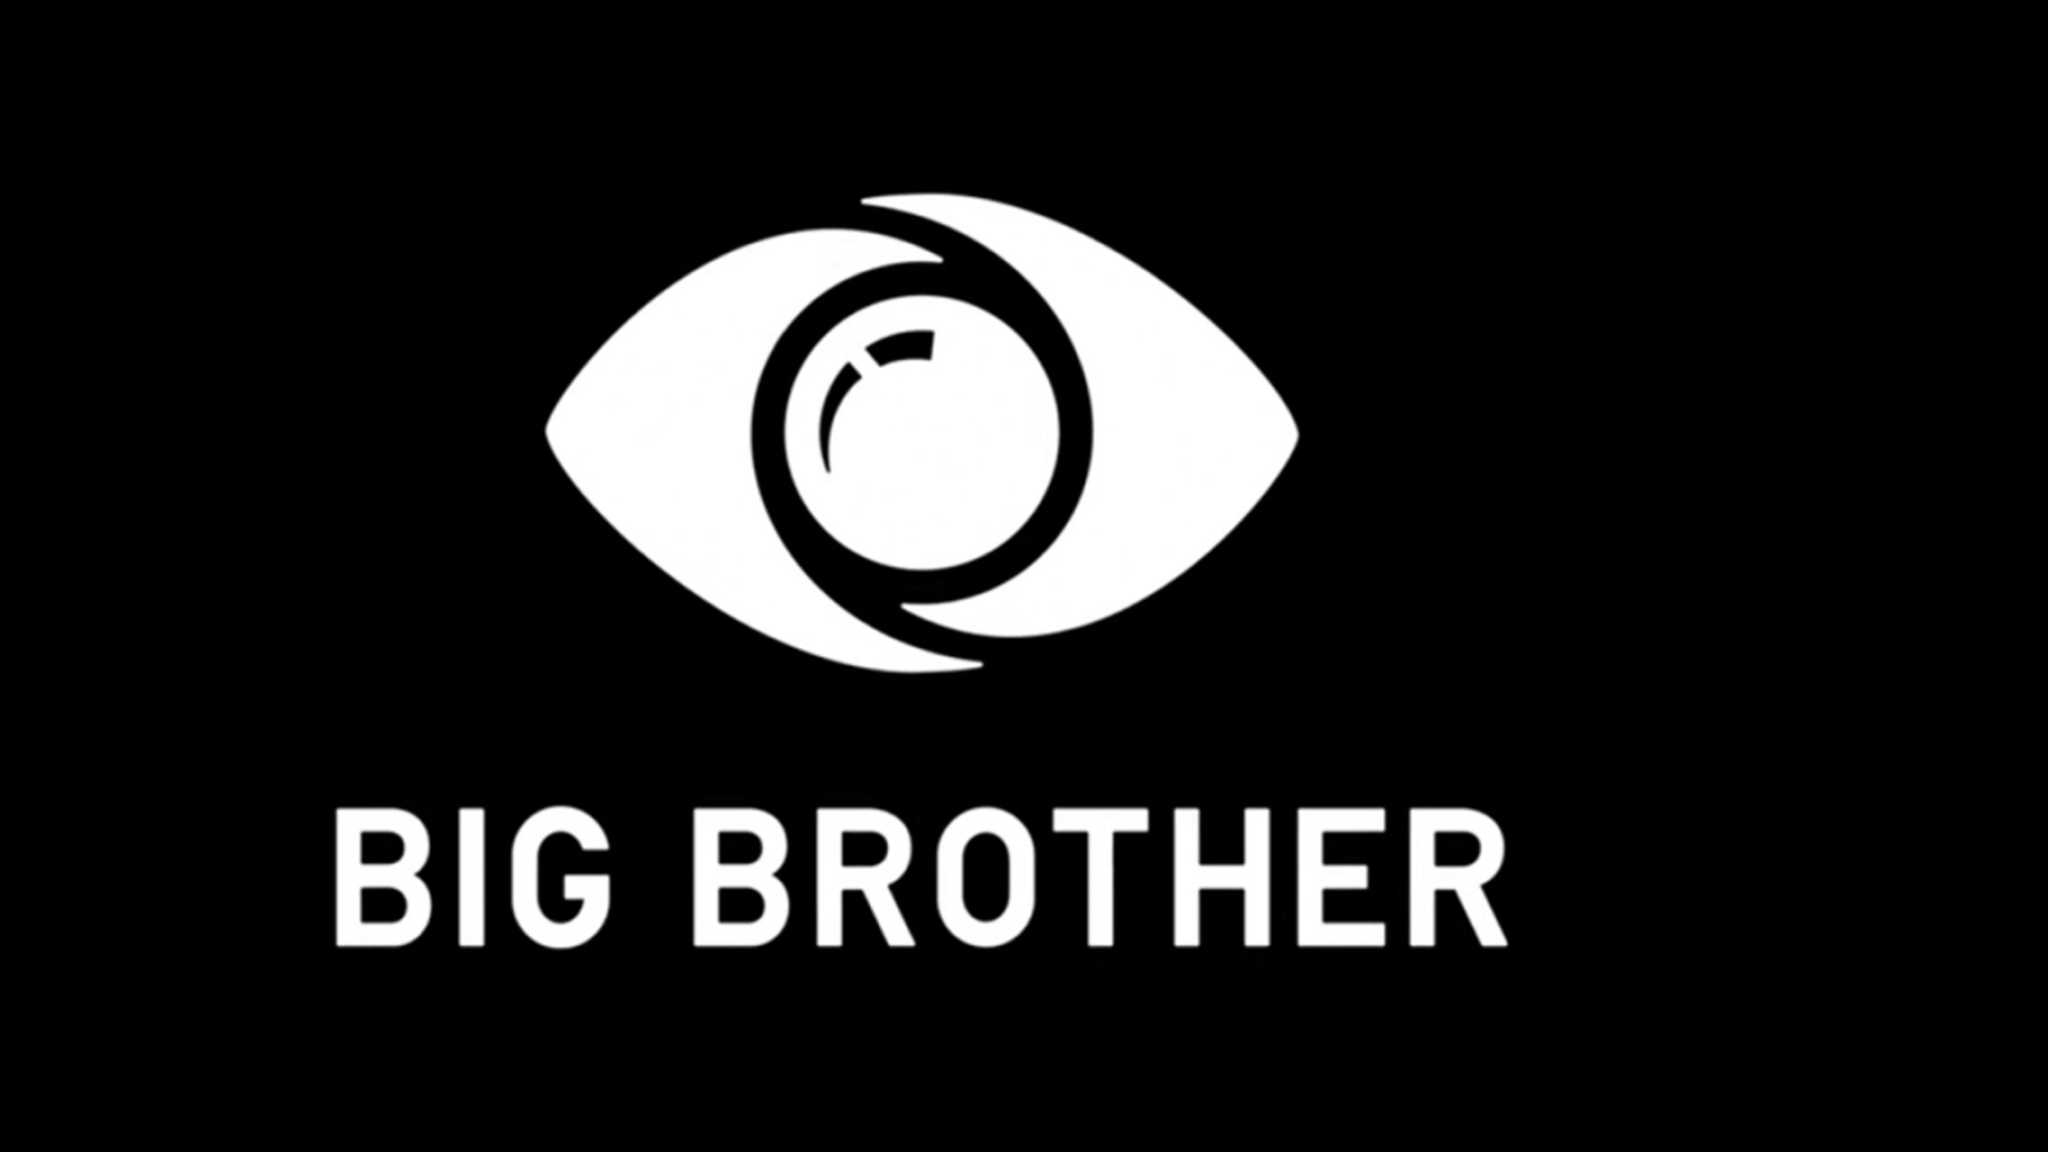 bigbrother1 2048x1152 1